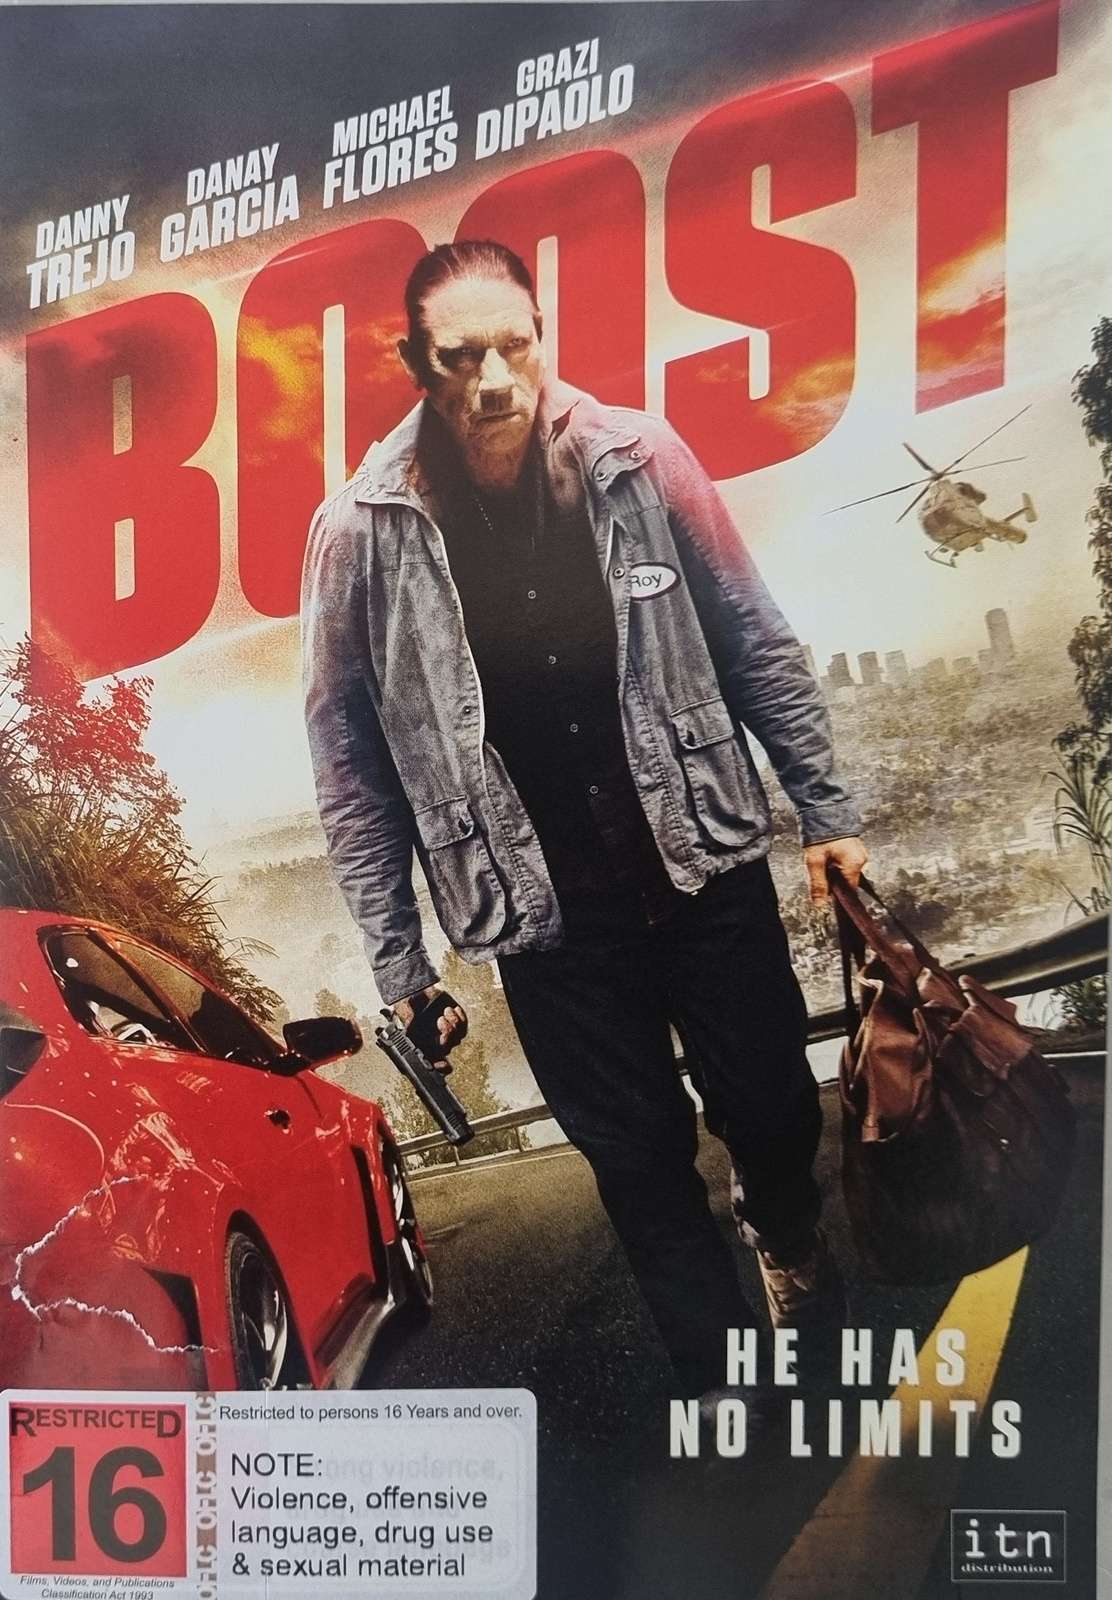 Boost (2017)